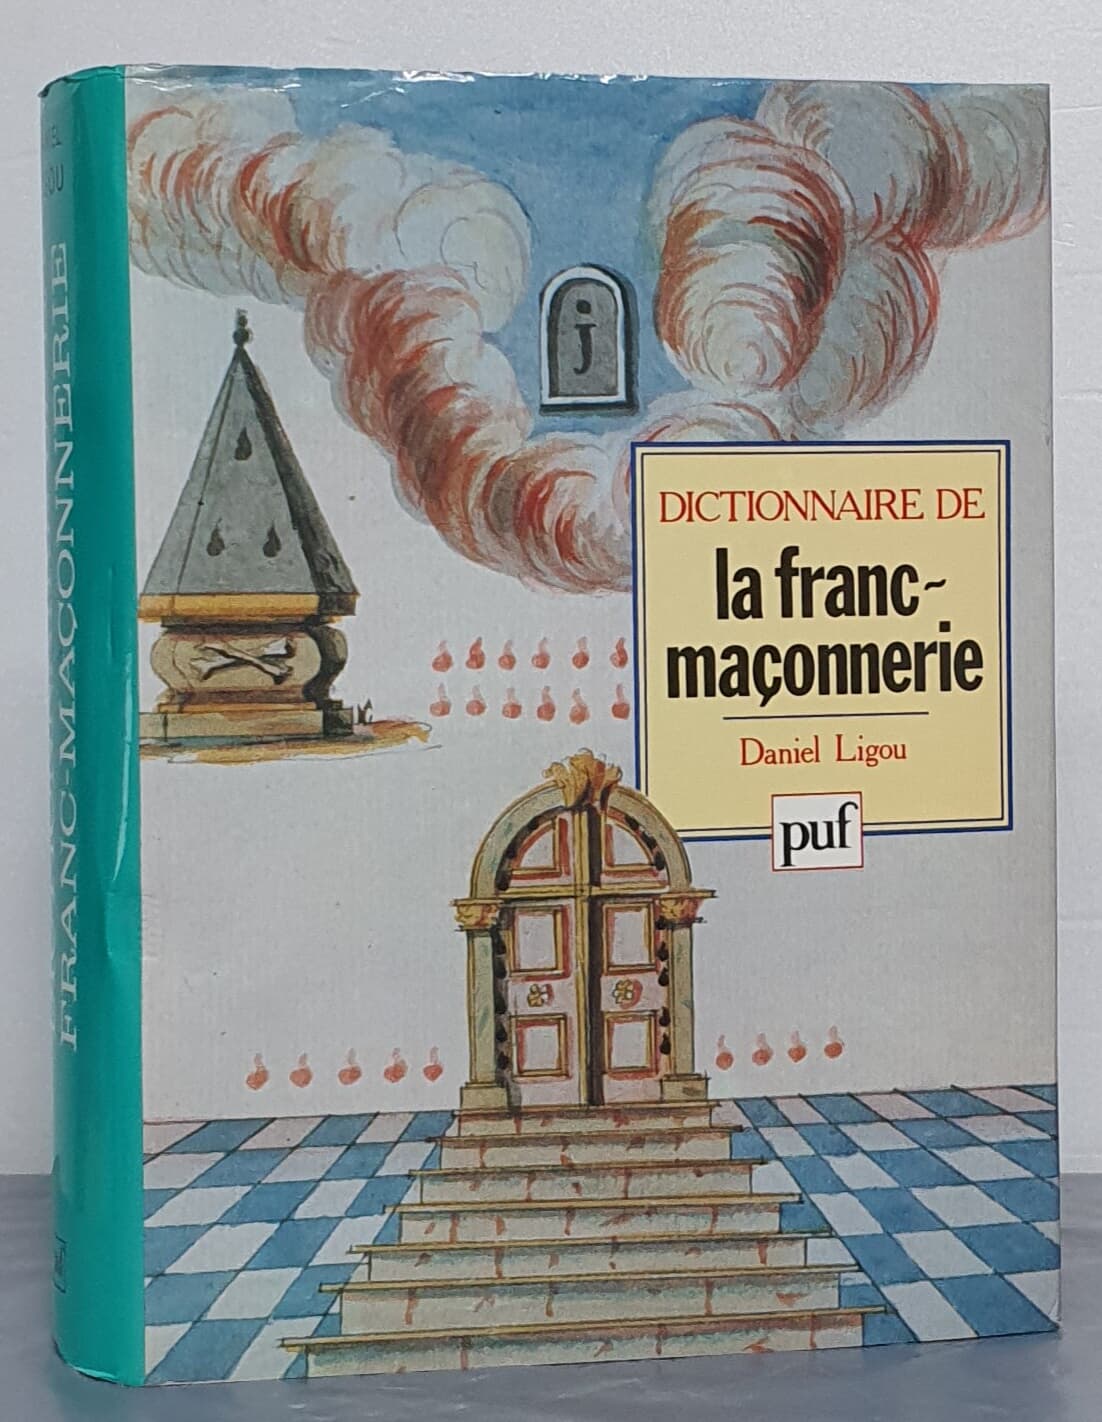 DICTIONNAIRE DE la franc~maconnerie